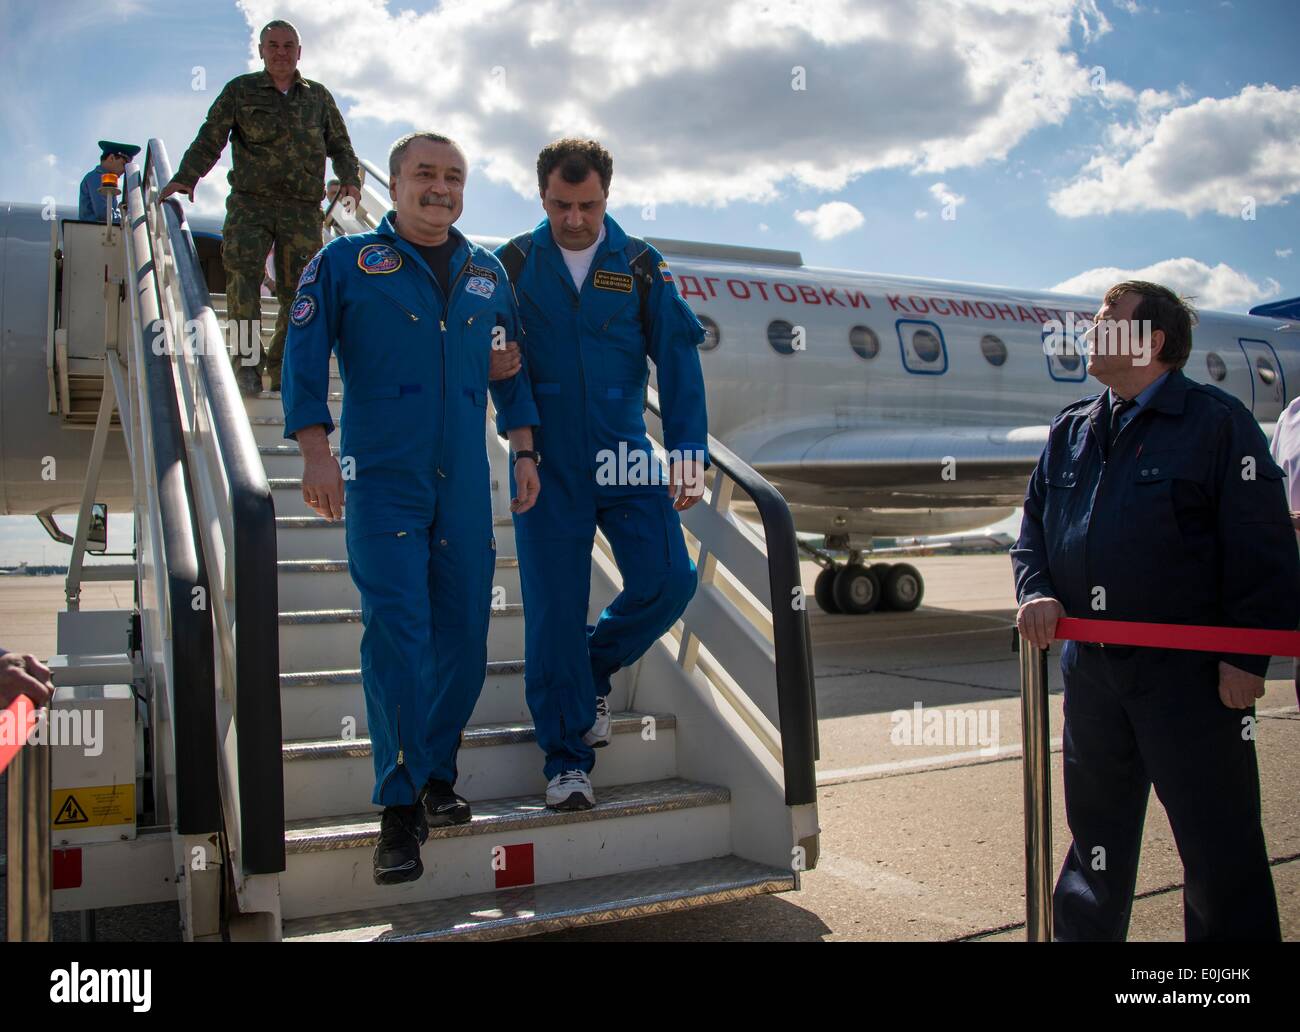 Expedición de la ISS 39 El ingeniero de vuelo Mikhail Tyurin de la Agencia Espacial Federal Rusa es bienvenido a su regreso al aeropuerto Chkalovsky unas pocas horas después del aterrizaje de la nave espacial Soyuz TMA-11M en Kazajstán el 14 de mayo de 2014 en Moscú, Rusia. Mastracchio Wakata, Tyurin y regresaron a la tierra después de más de seis meses a bordo de la Estación Espacial Internacional donde servían como miembros de la expedición 38 y 39 tripulantes. Foto de stock